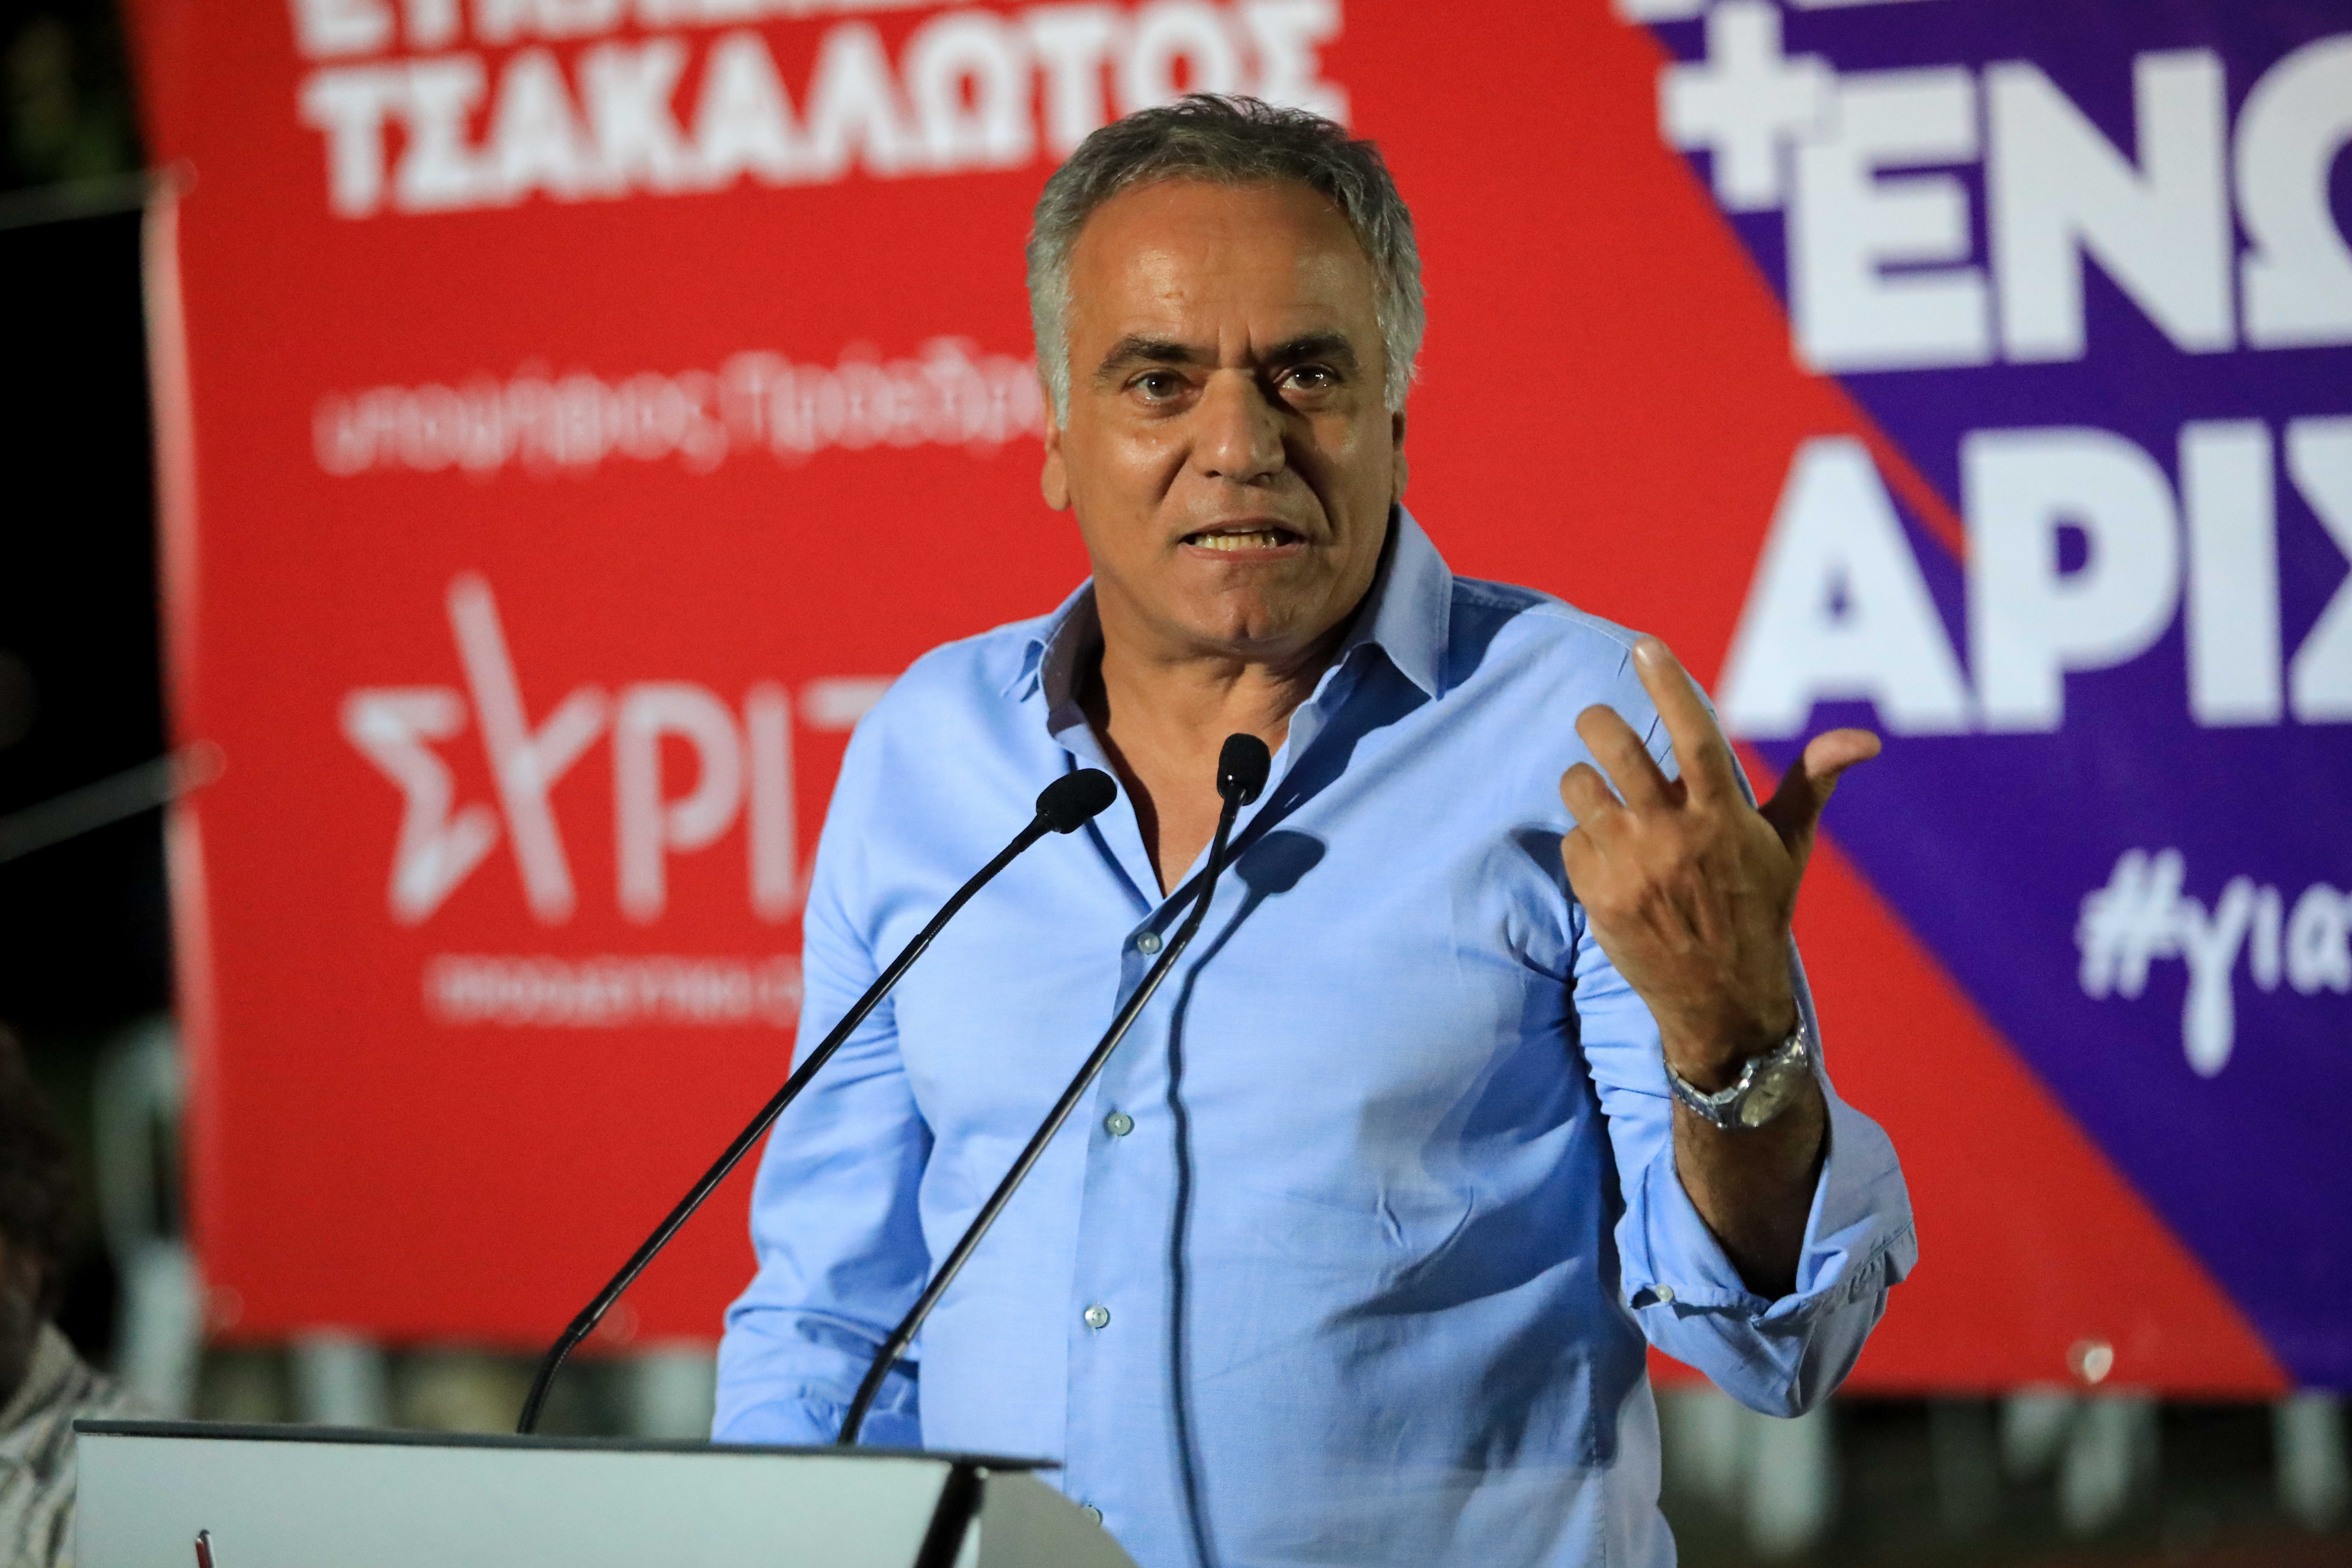 Σκουρλέτης μετά την διαγραφή: Ο Κασσελάκης γελοιοποιεί τον ΣΥΡΙΖΑ μέρα με τη μέρα